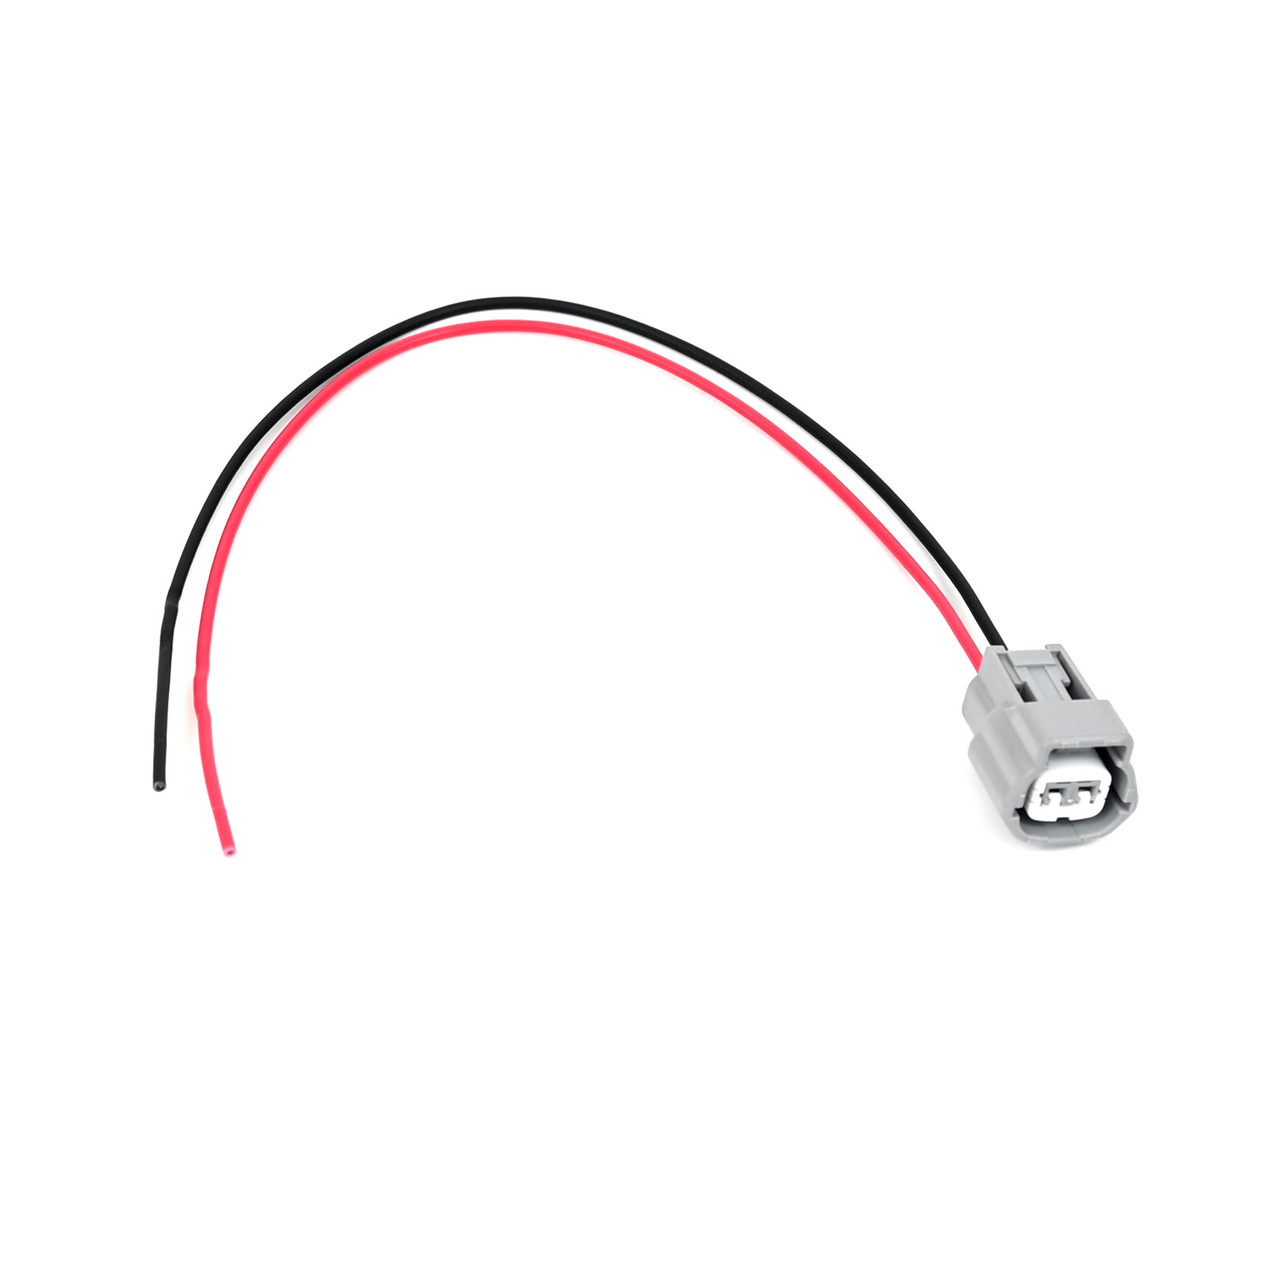 Ballast Power Plug Connector Wire -Fits Nissan Infiniti Mitsubishi Xenon HID Ballast